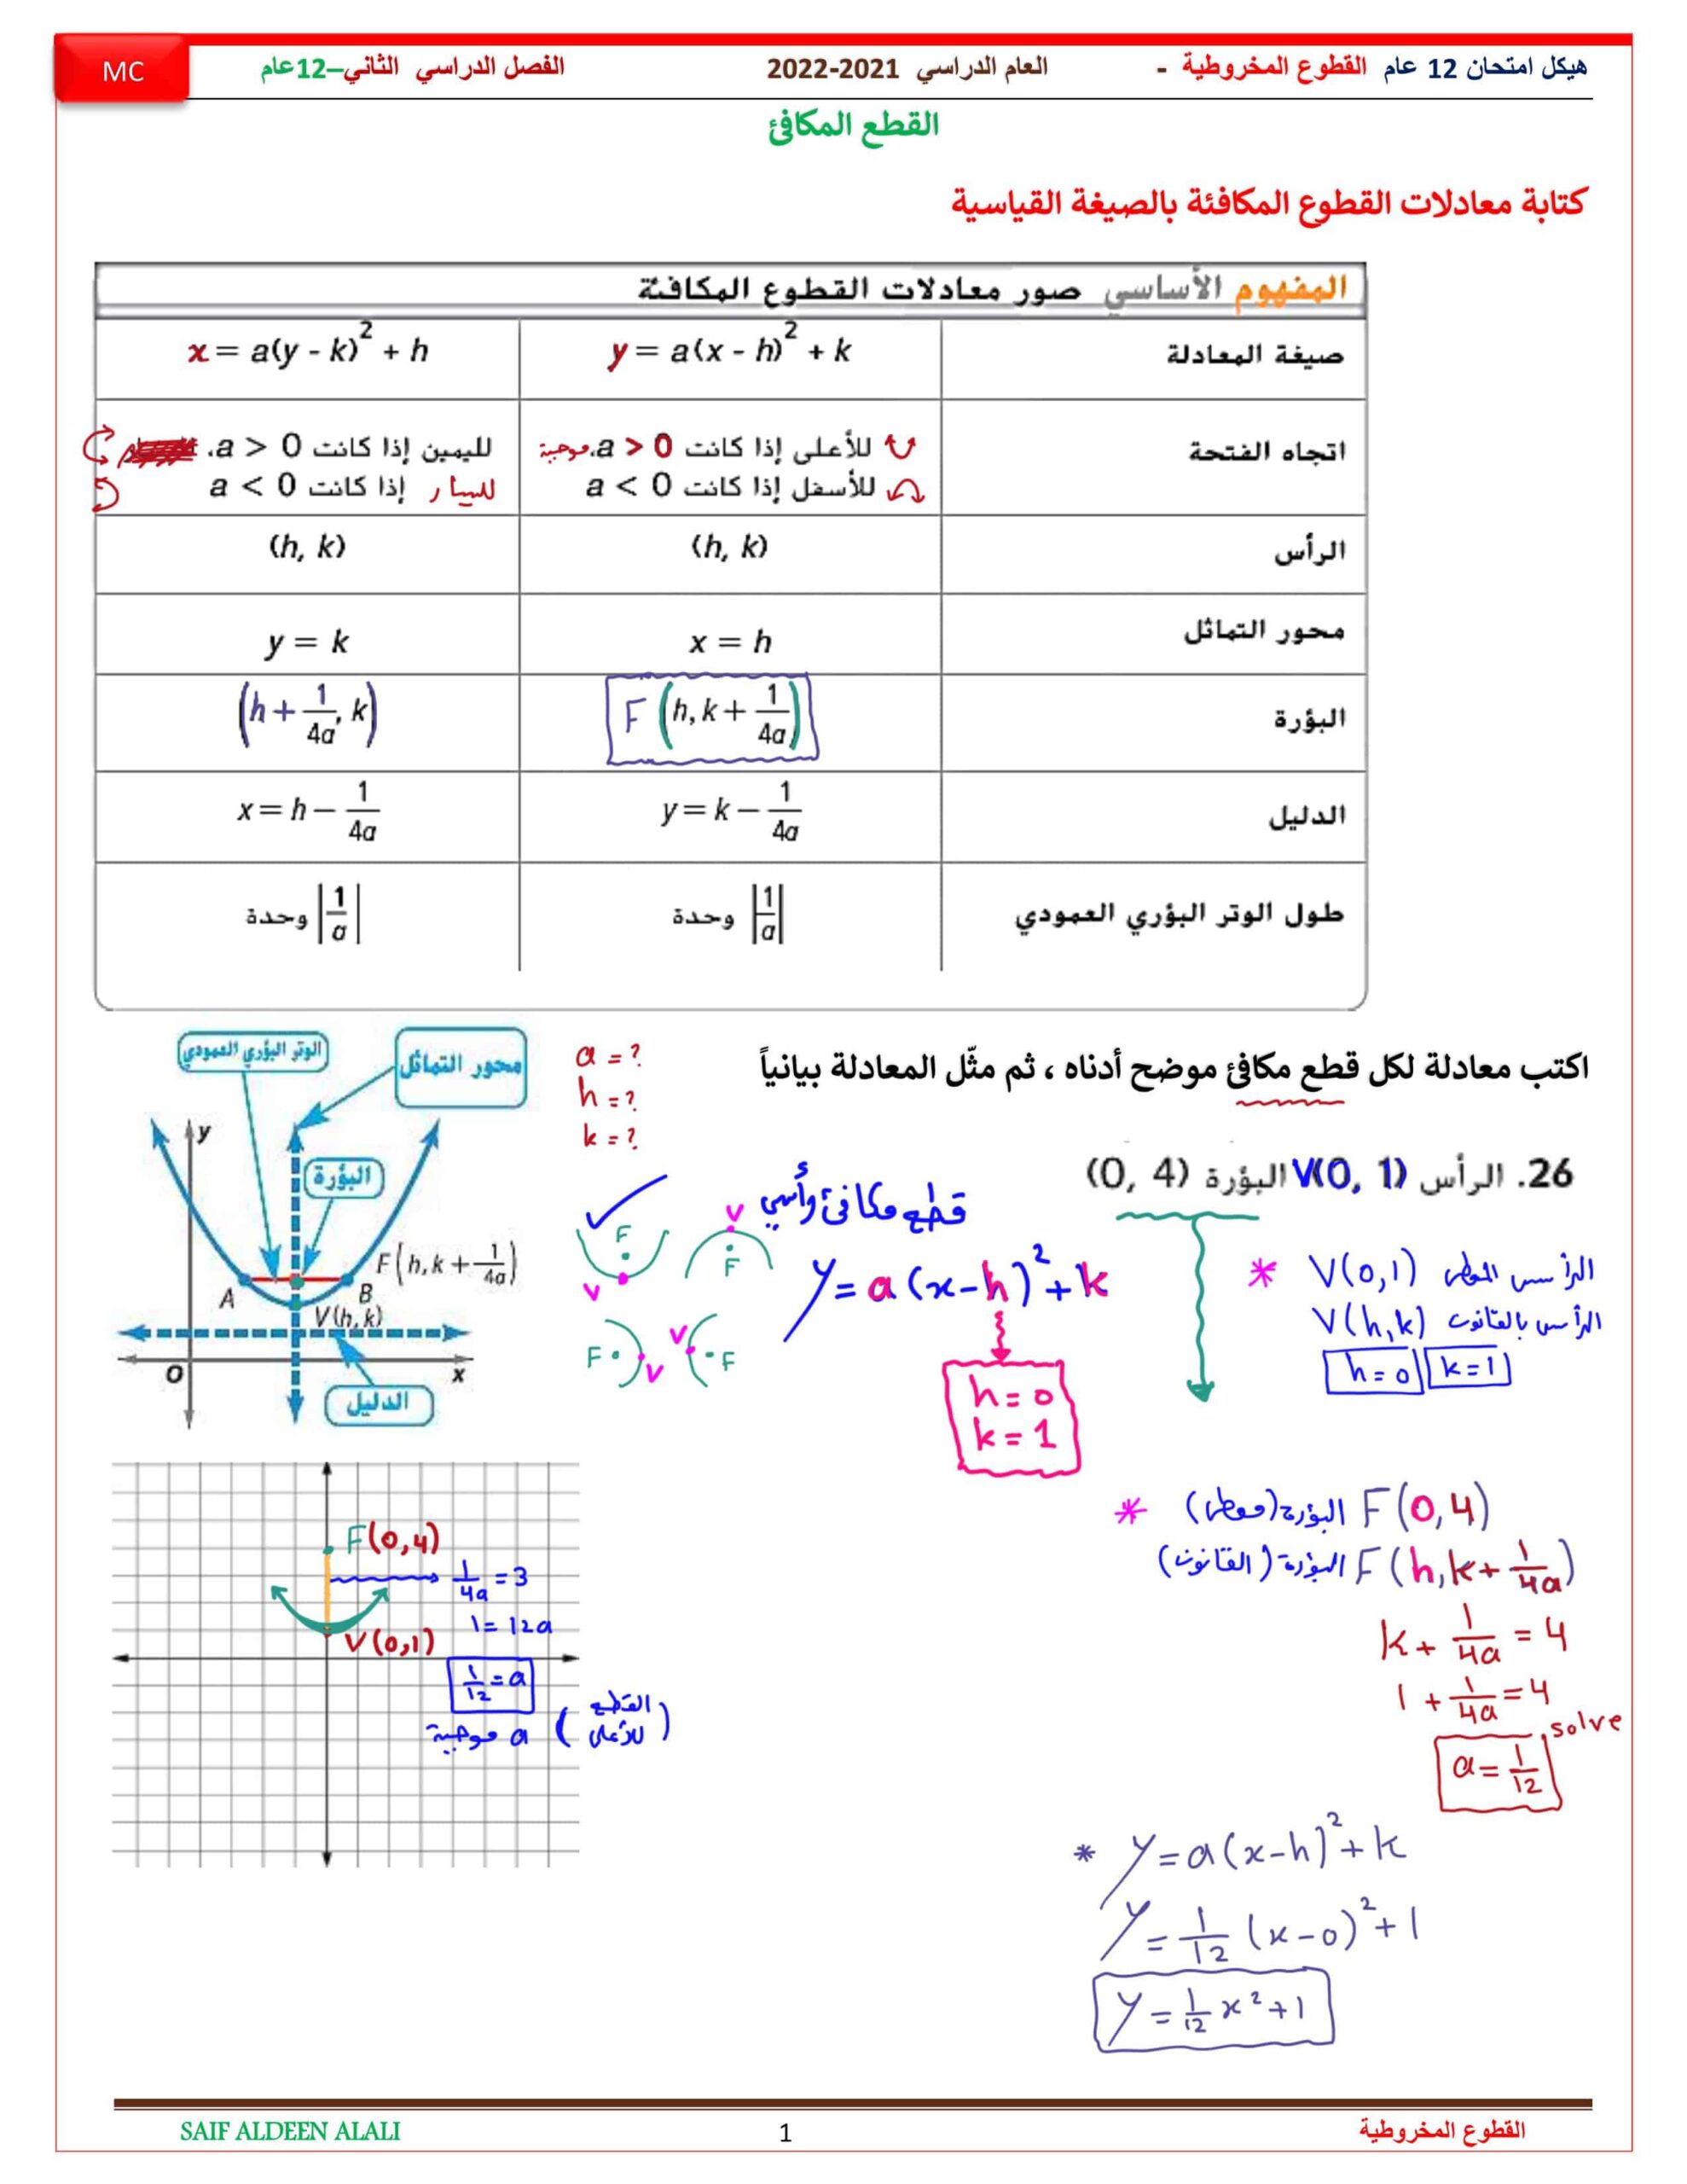 حل هيكل امتحان القطوع المخروطية الرياضيات المتكاملة الصف الثاني عشر عام